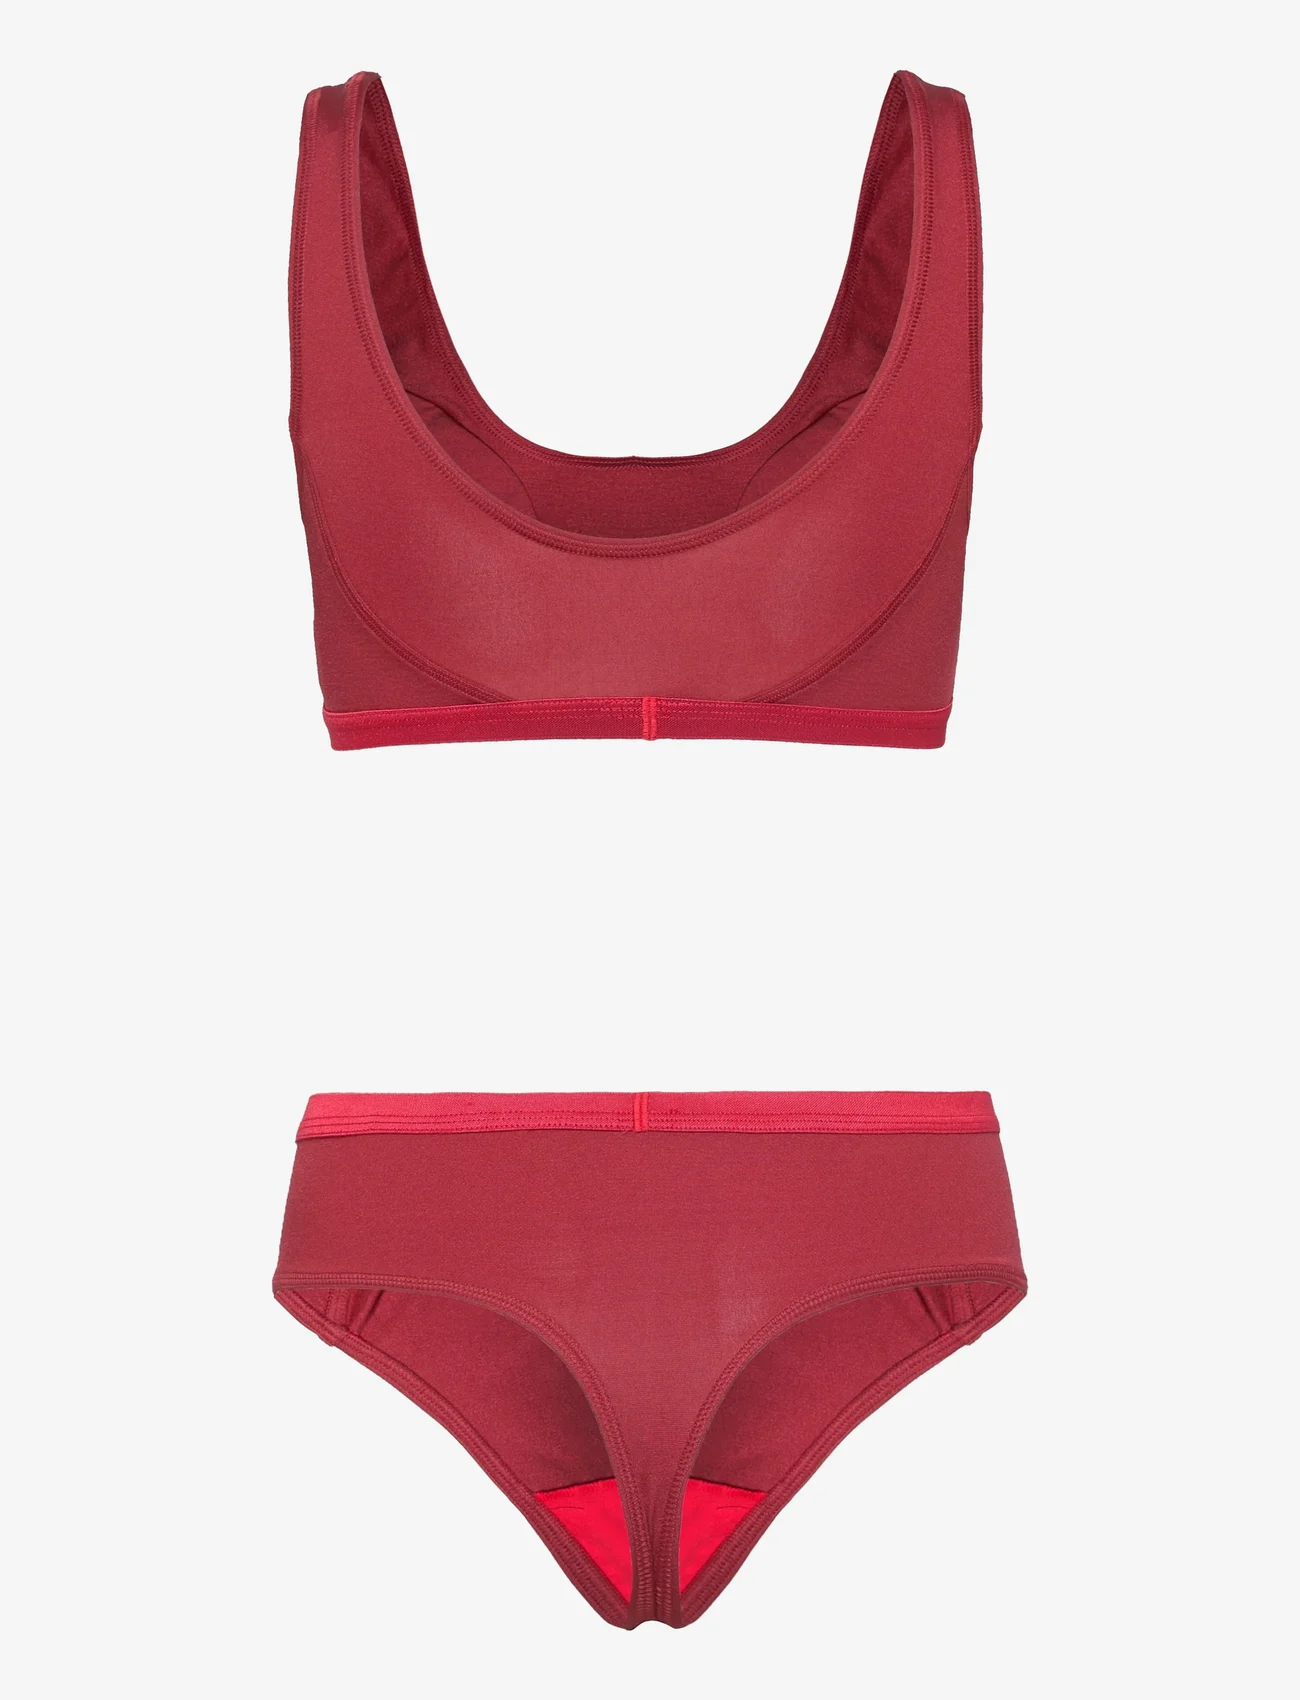 Calvin Klein - UNDERWEAR GIFT SET - tank top bras - rouge - 1